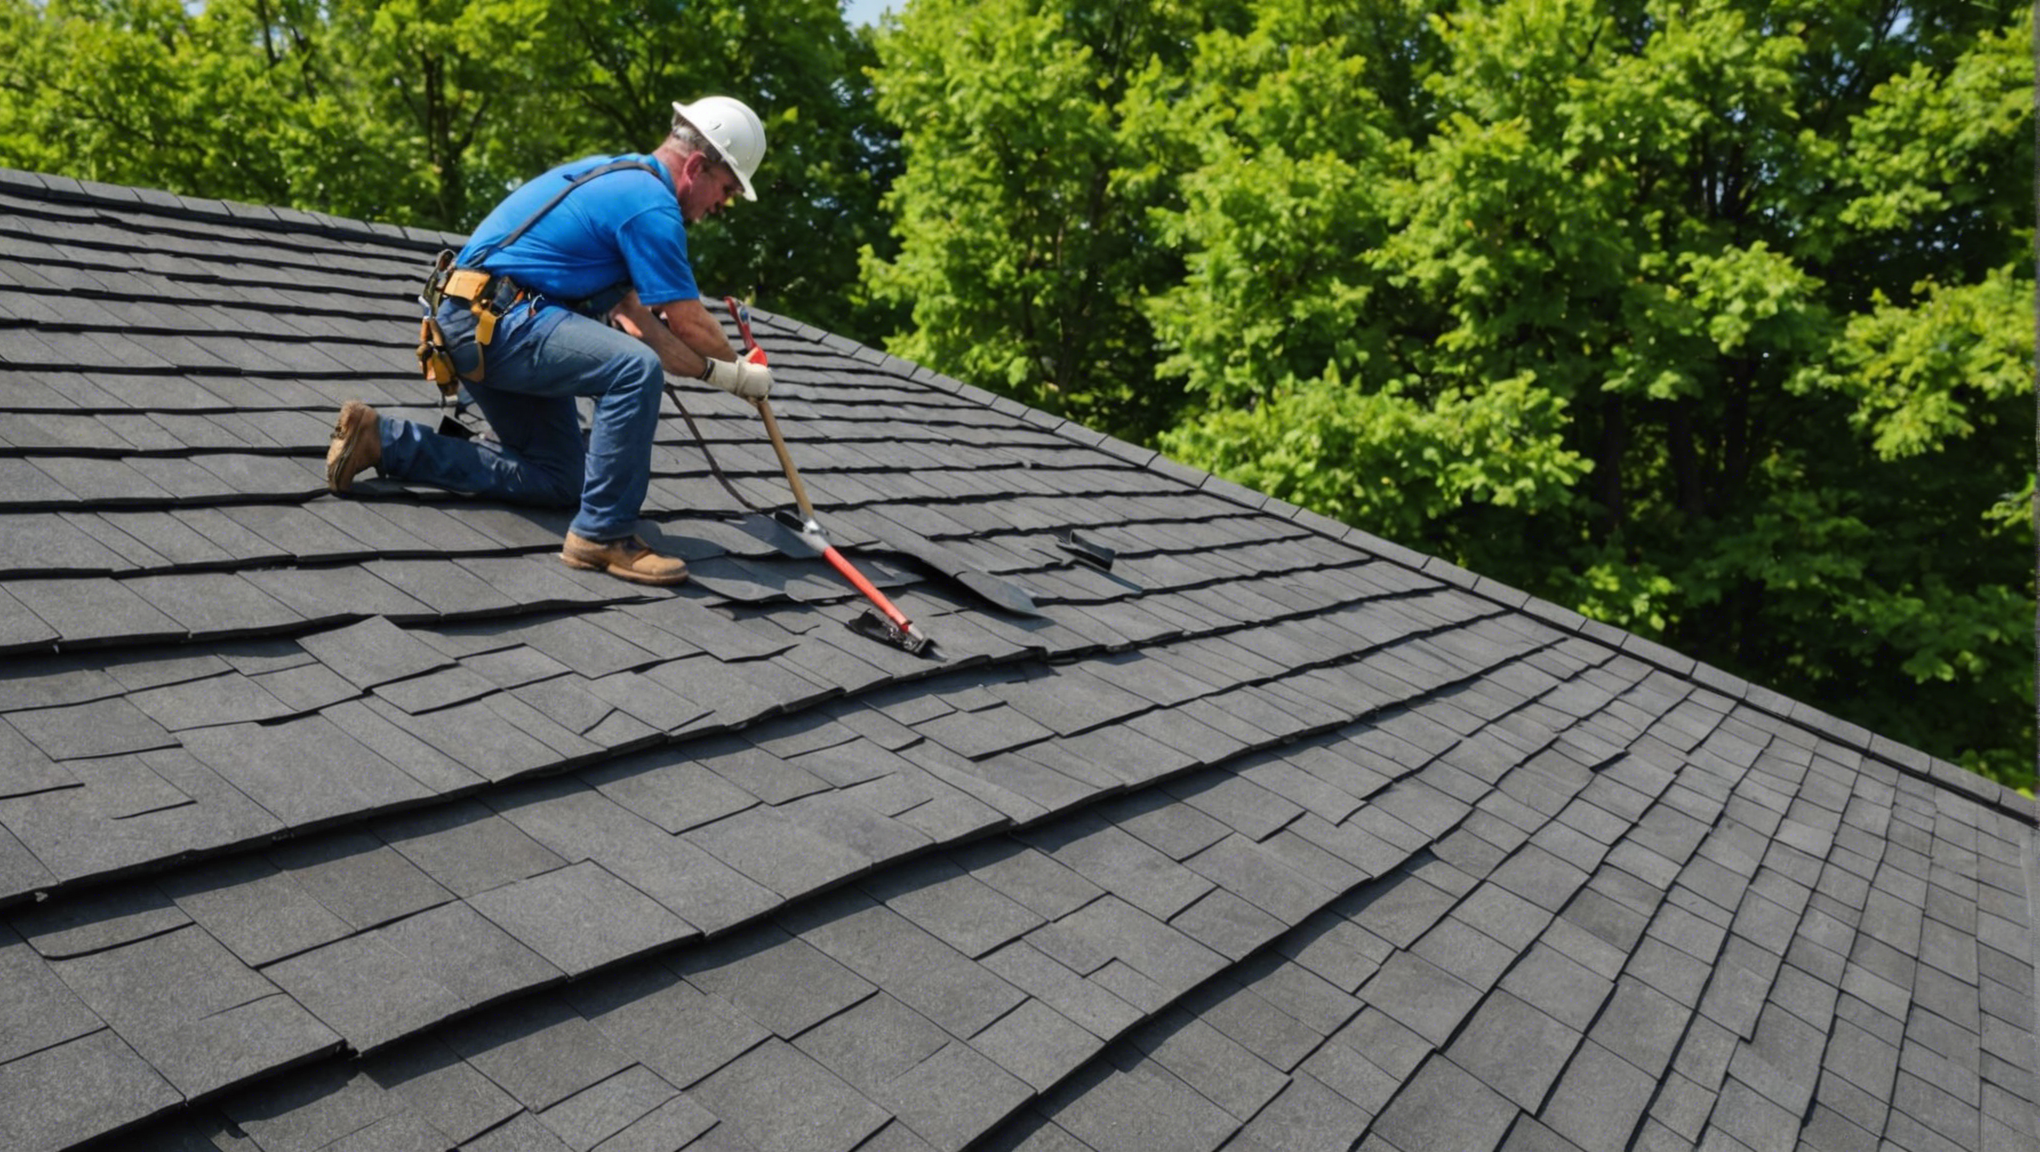 trouvez un couvreur de confiance pour votre toiture avec nos conseils et astuces. découvrez comment sélectionner le meilleur professionnel pour prendre soin de votre toit.